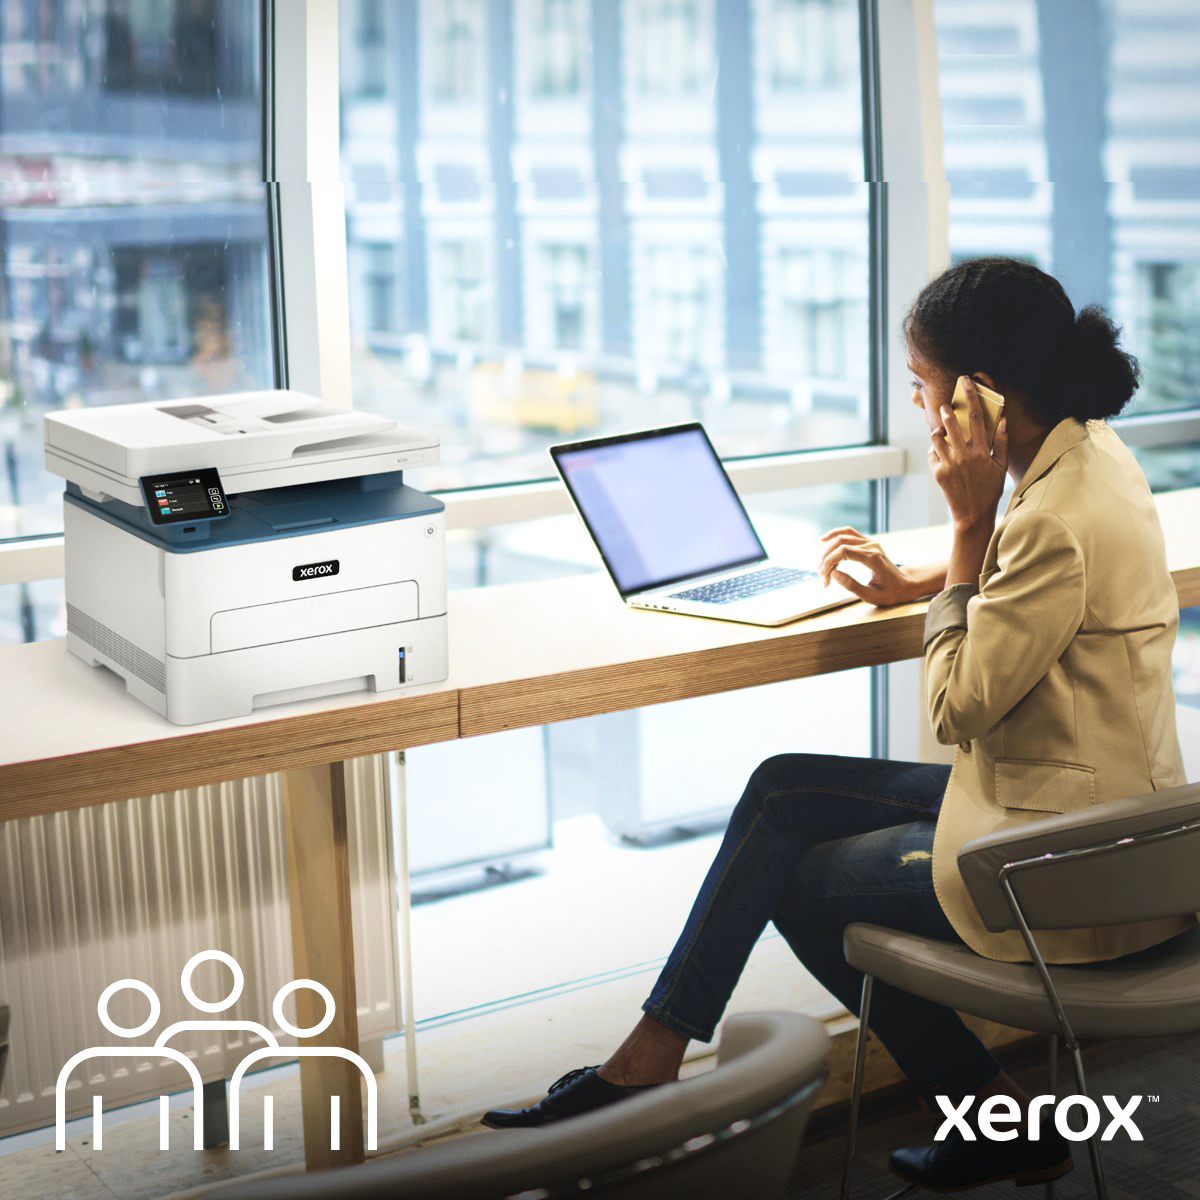 Femme au téléphone en télétravail et à côté d'une imprimante Xerox®.